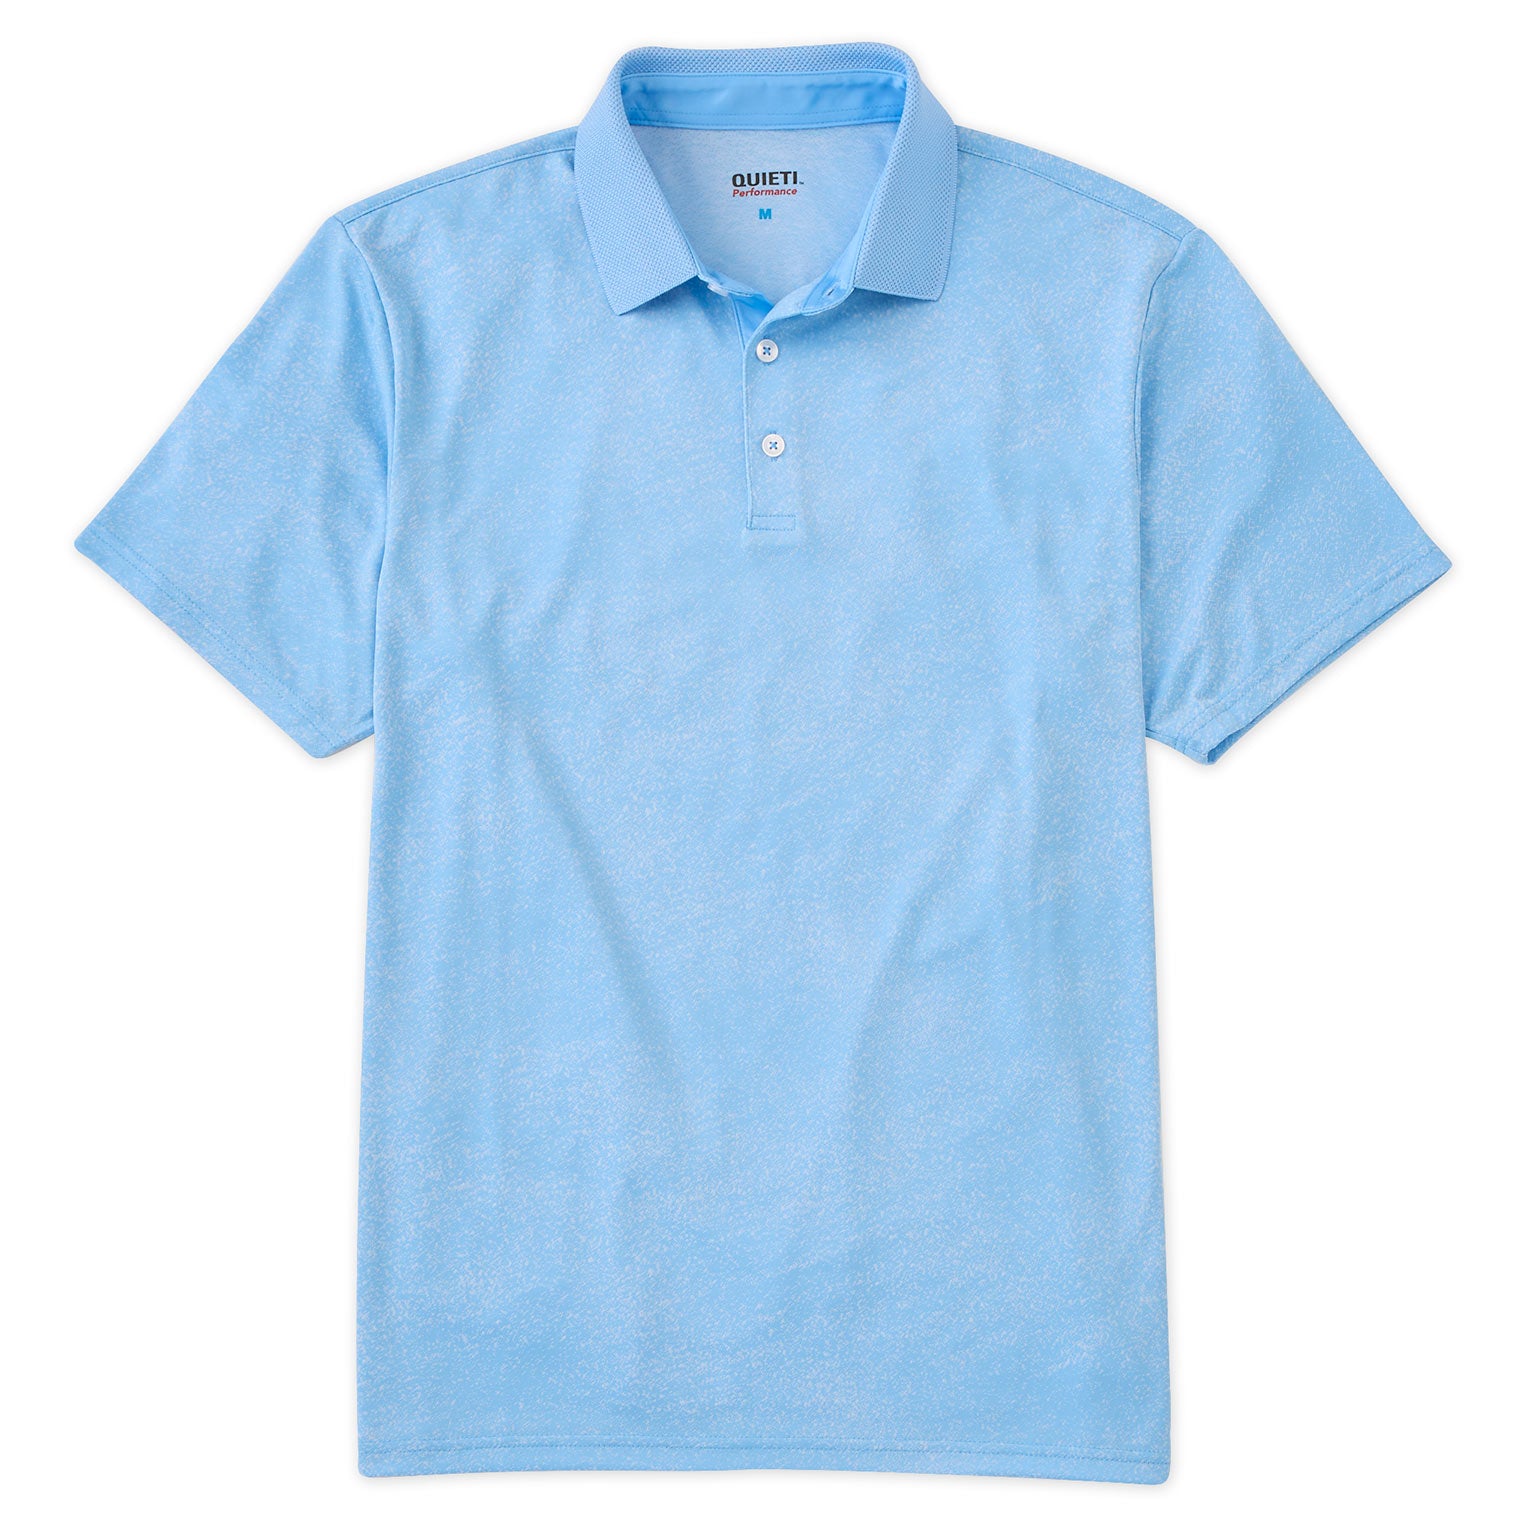 Andrew Men's Short Sleeve Polo Shirt